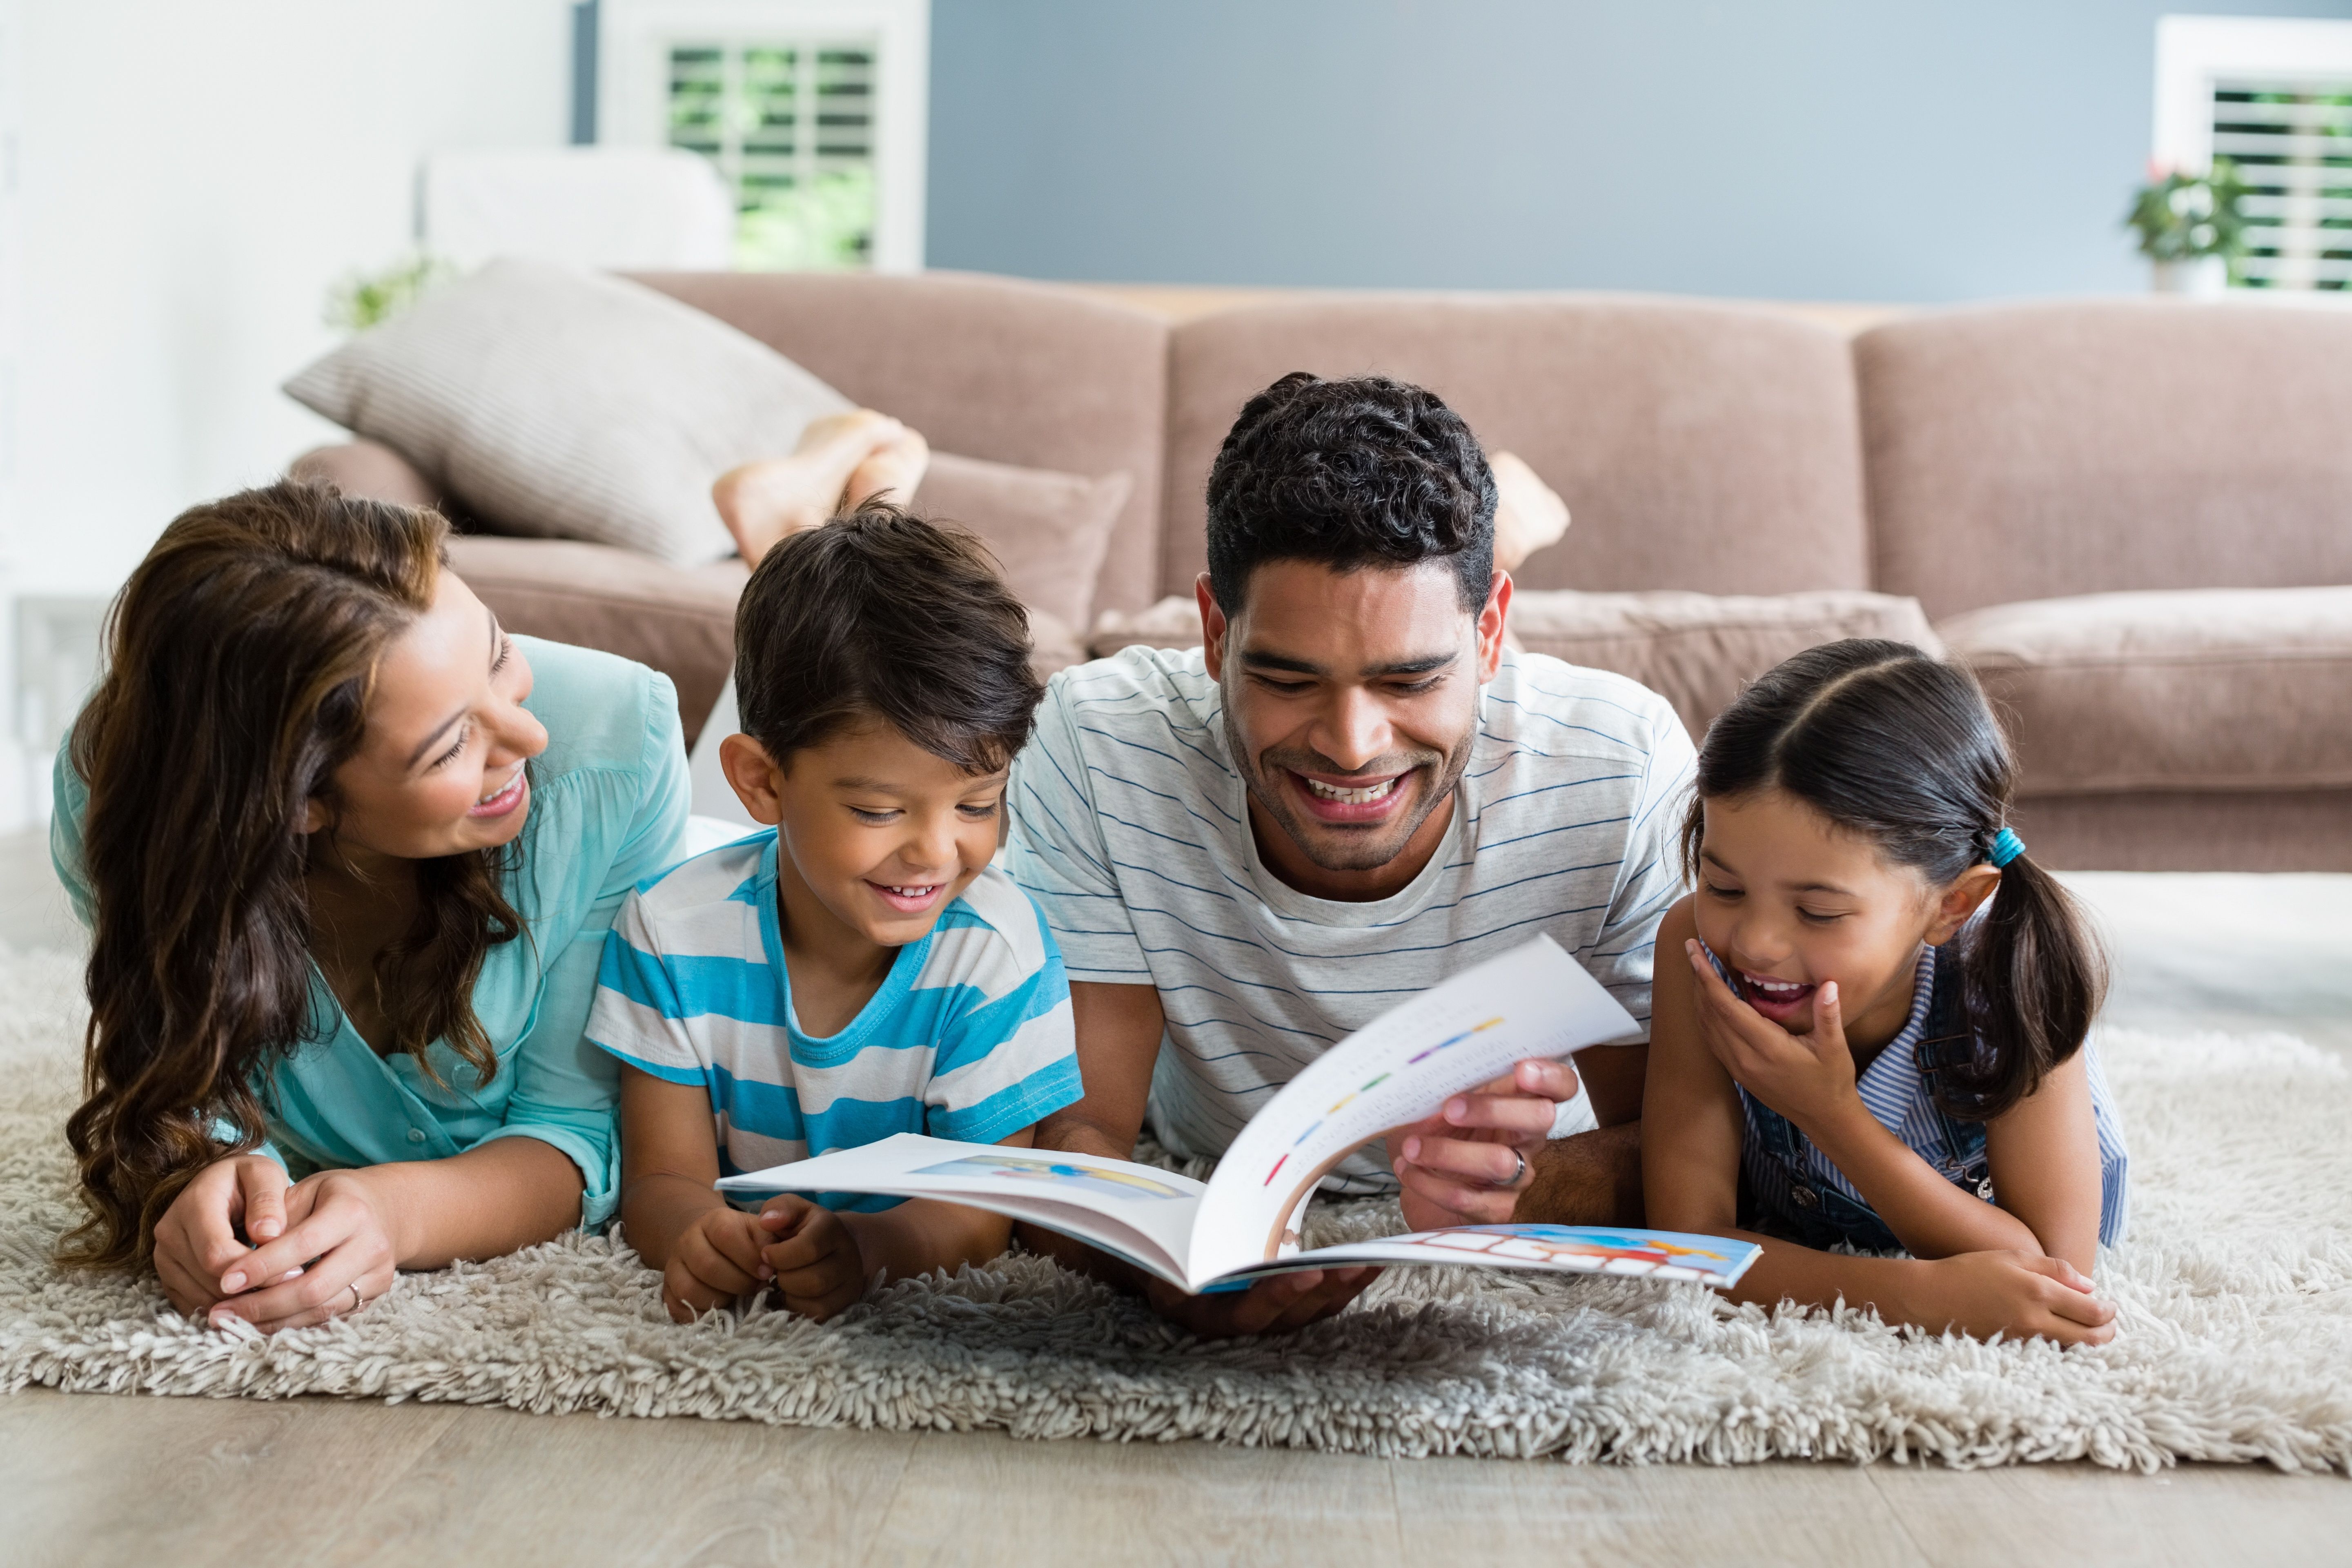 He the book at home. Семья в гостиной. Книги о семье. Family читаем. Ребенок с родителями на ковре.